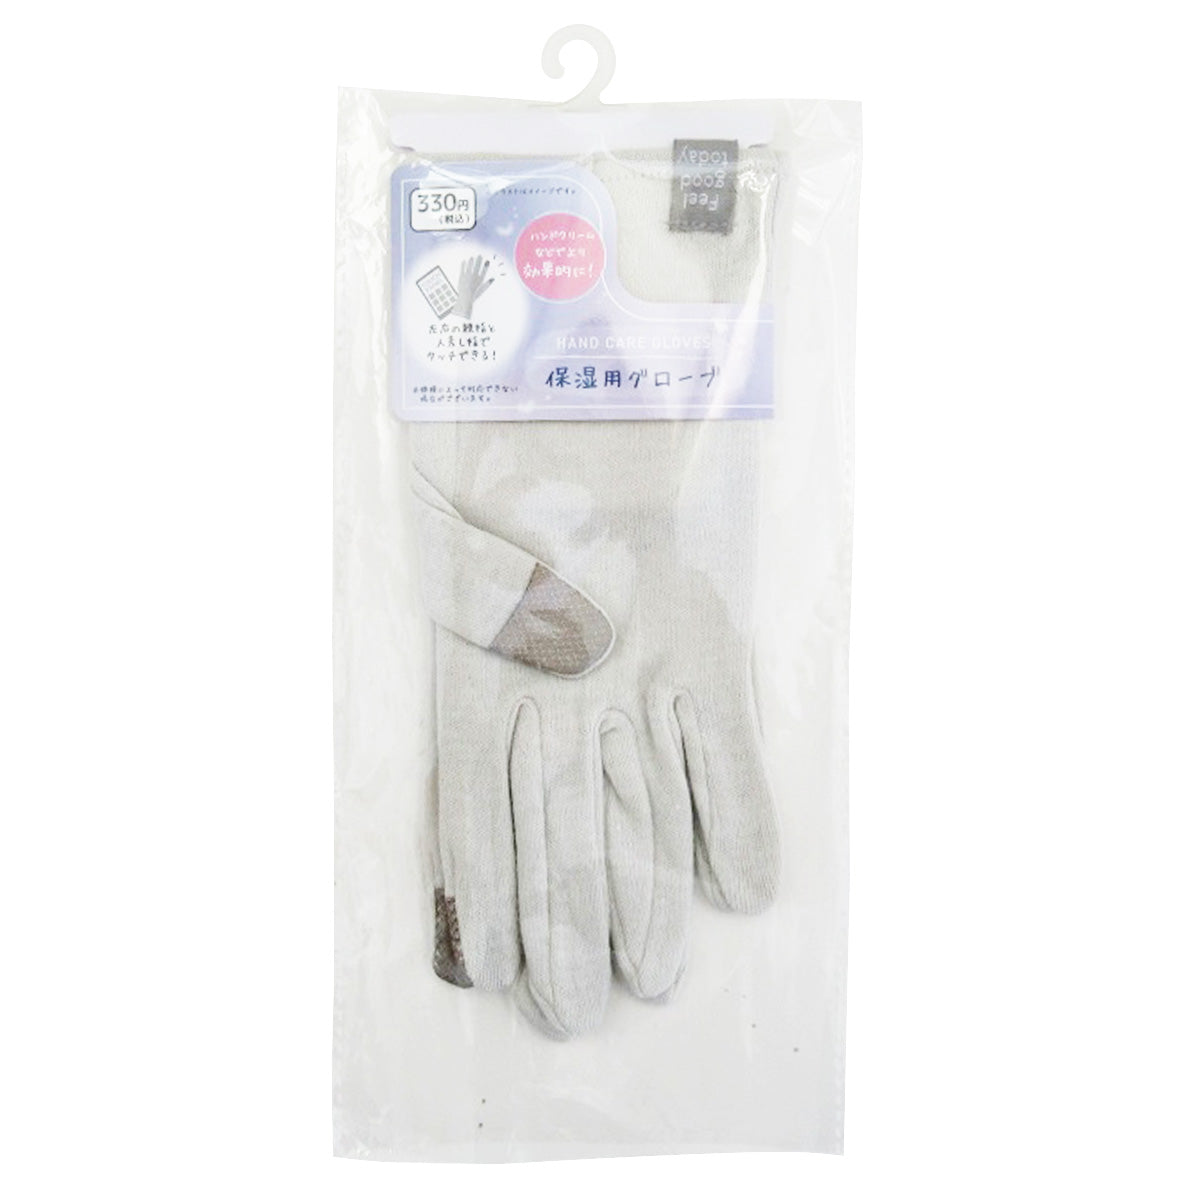 保湿用グローブ 手袋 乾燥対策 グレー 359656